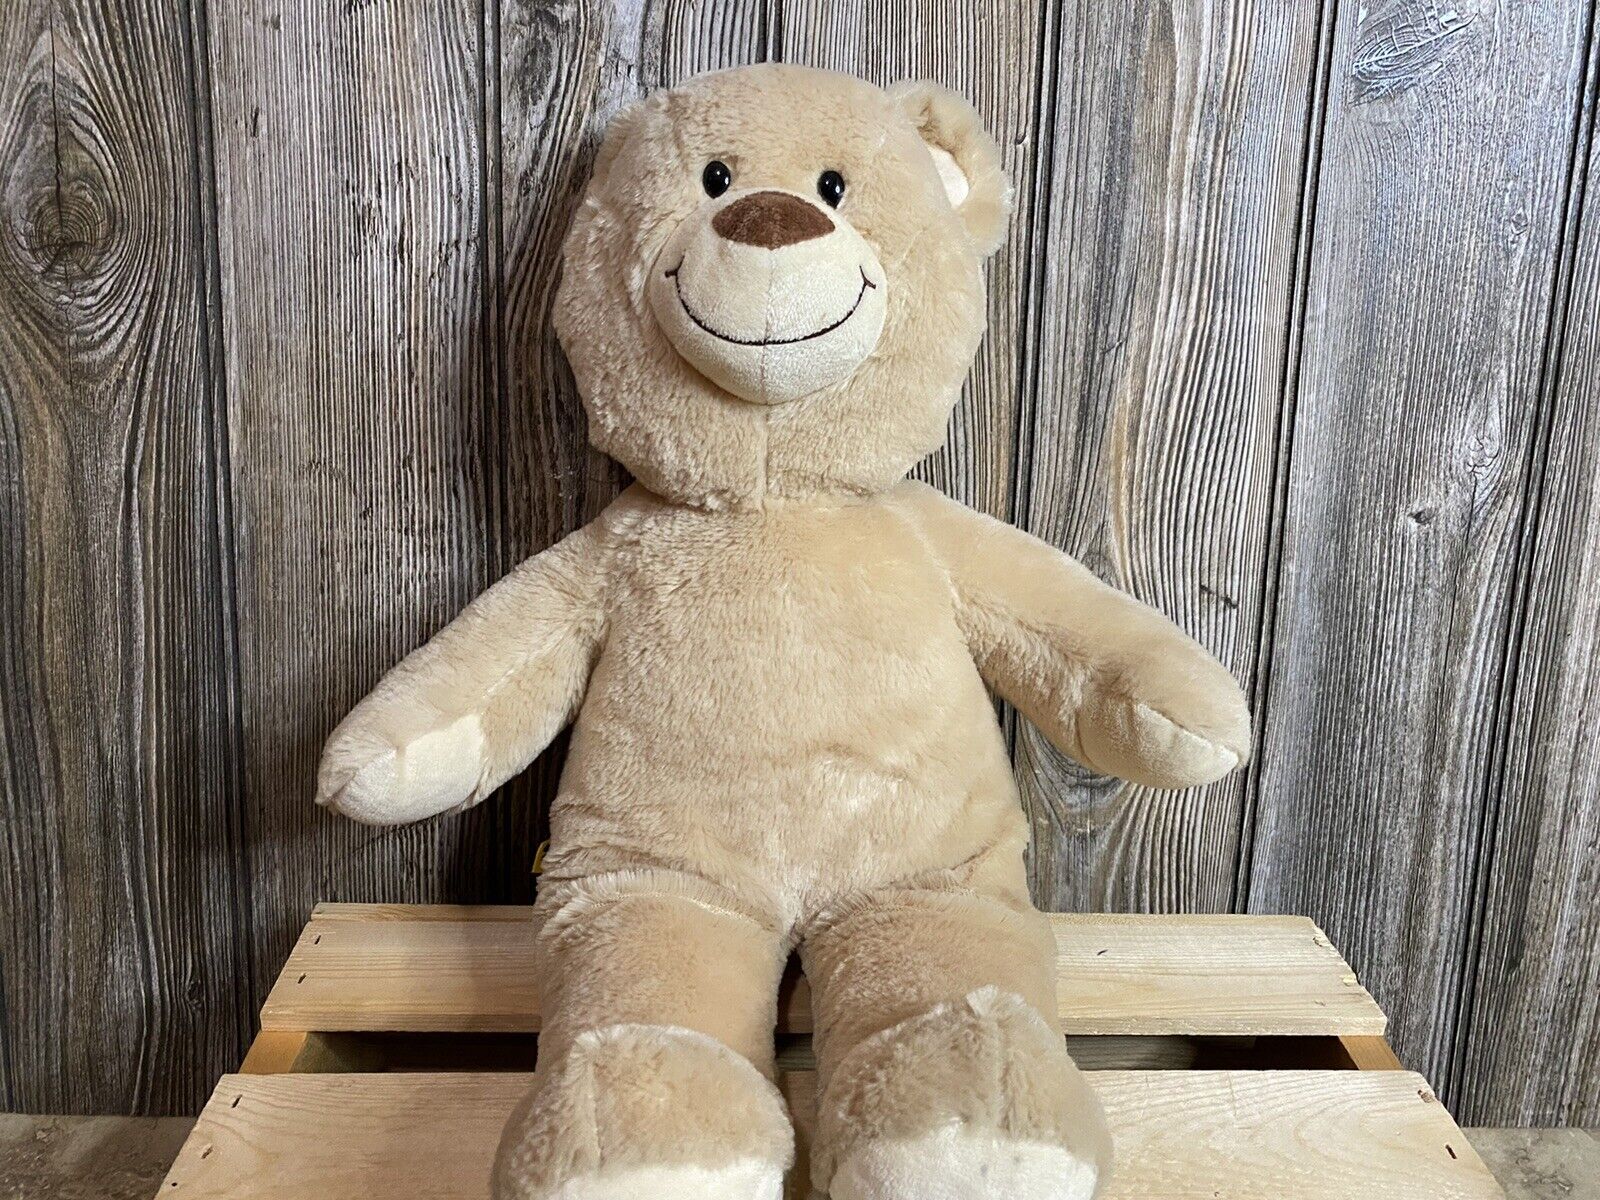 Build A Bear Plush Teddy Cream & Brown Tan BAB Workshop Stuffed animal toy